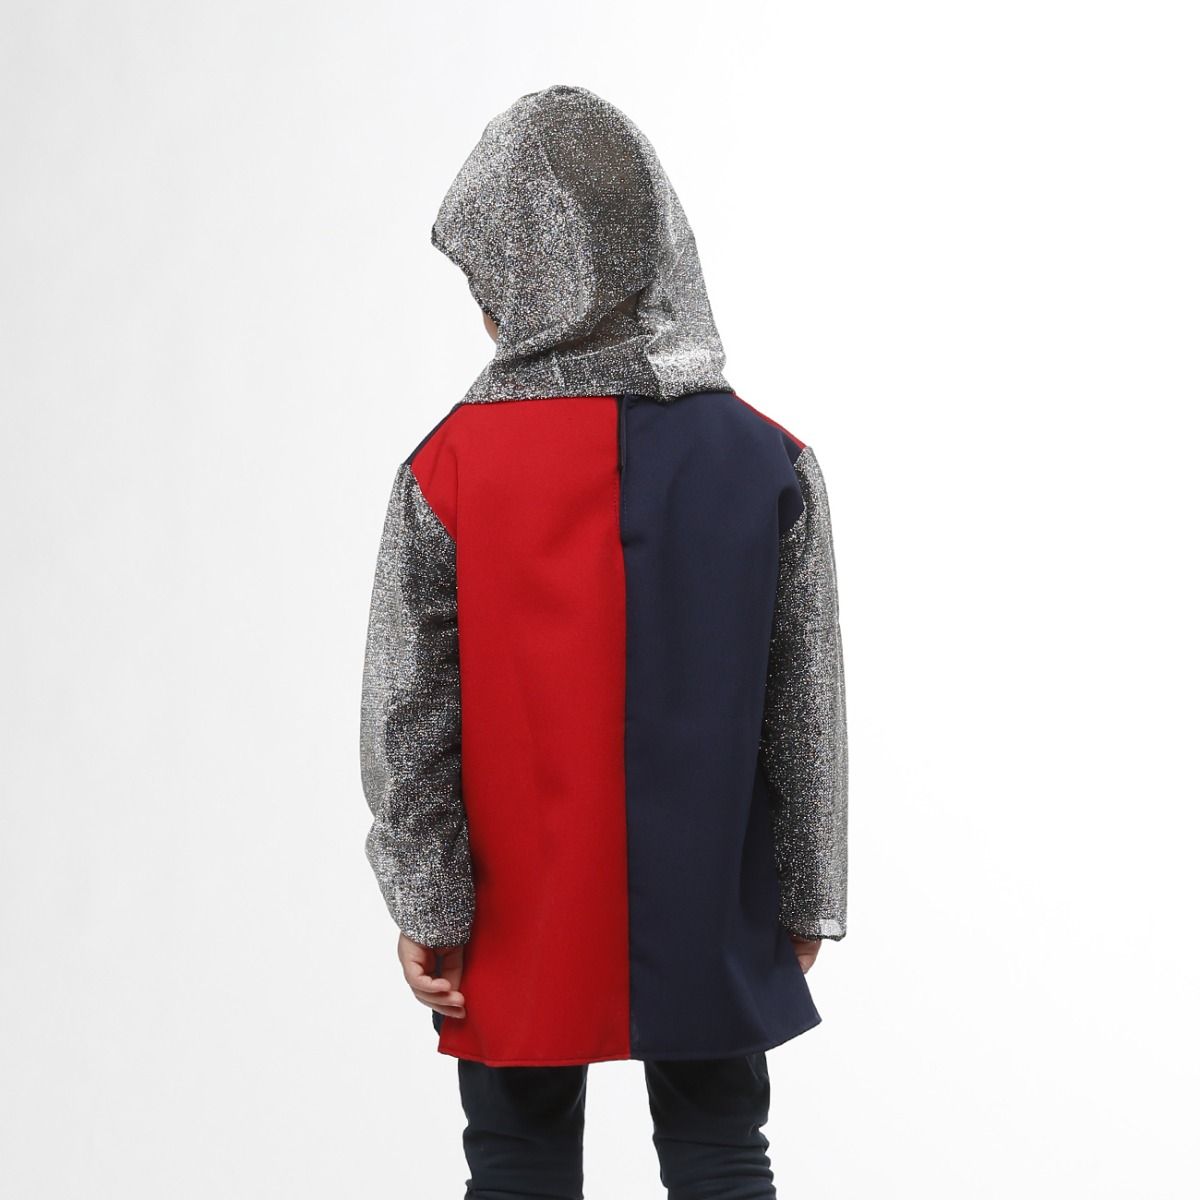 Dos tunique déguisement ou costume chevalier enfant